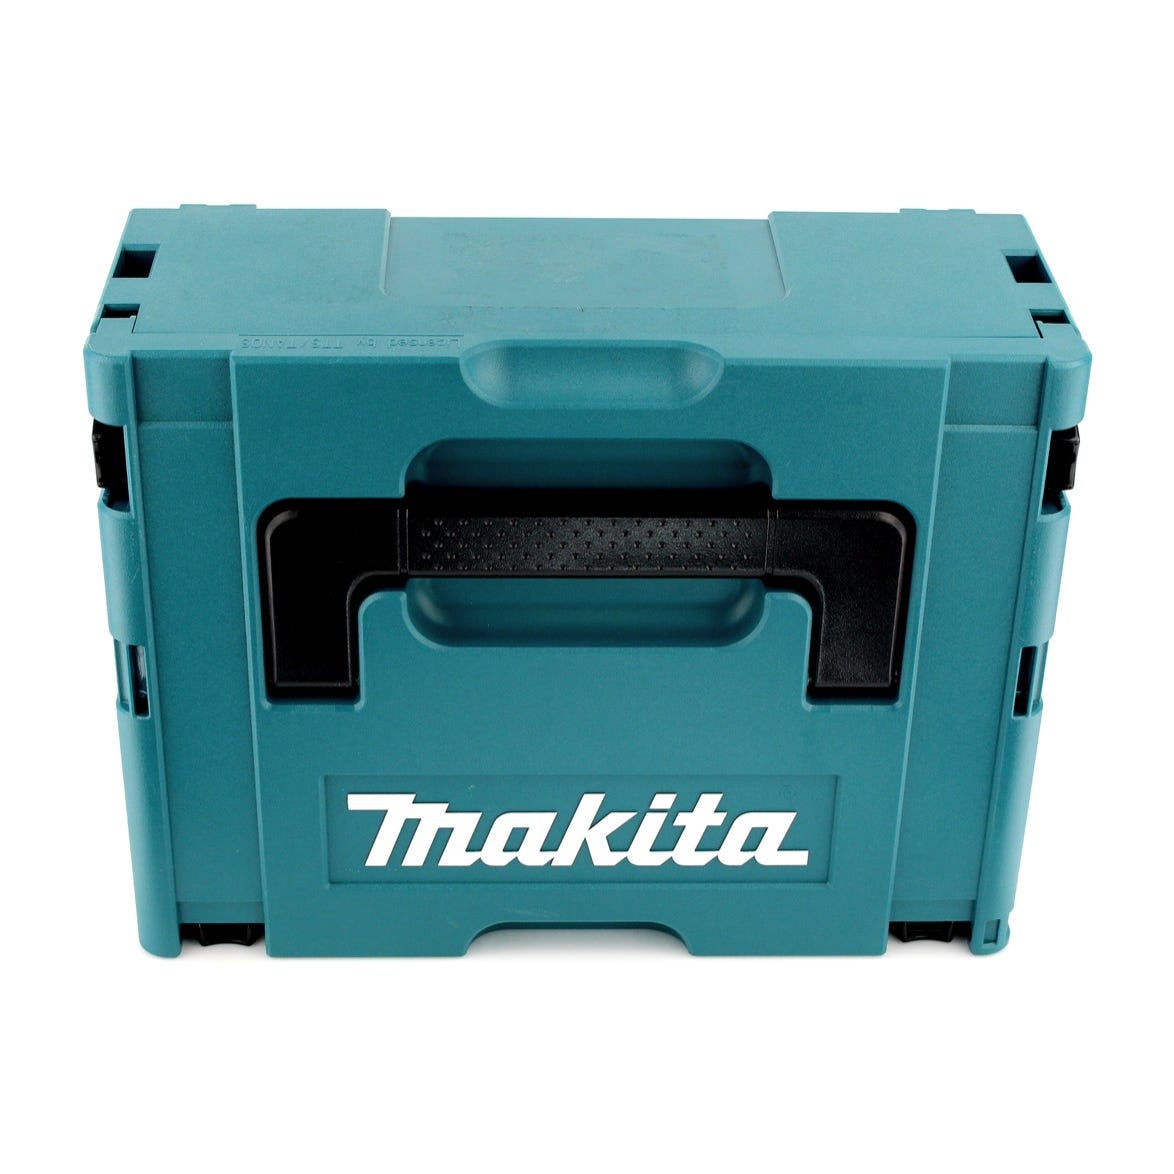 Makita DTD 155 RF1 Perceuse visseuse à percussion sans fil et sans balai 18 V Li-Ion + 1x Batterie BL1830 3,0 Ah + Coffret - 2